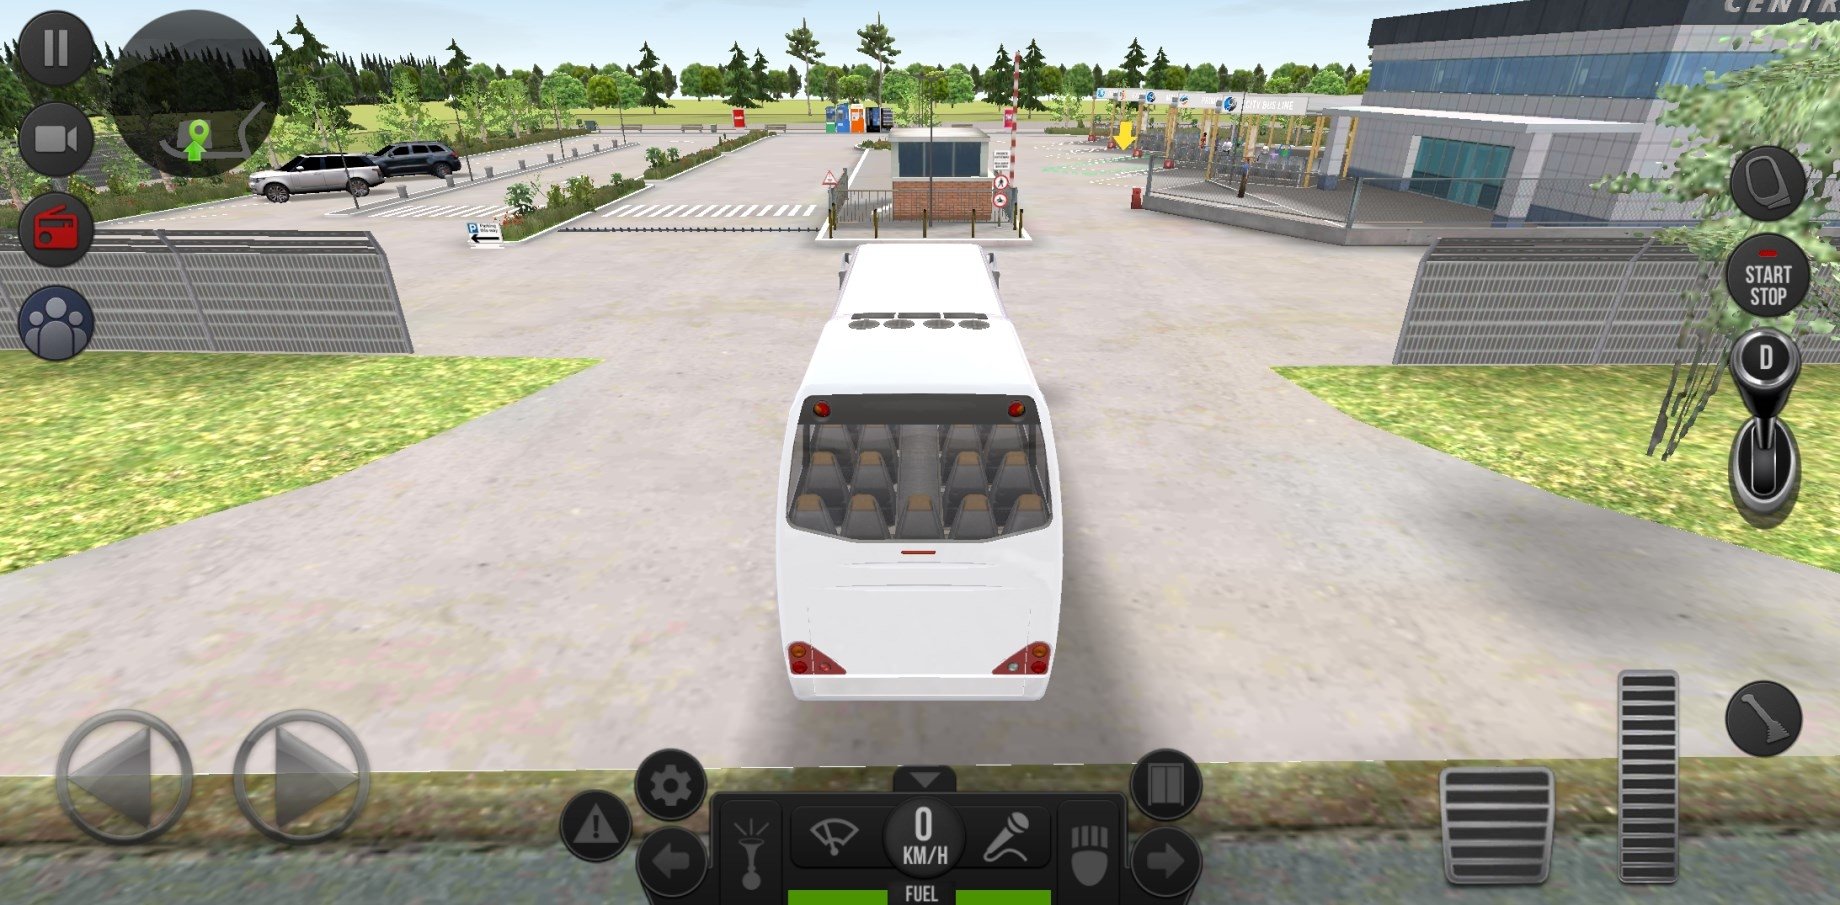 Bus Simulator Ultimate APK 2.1.4 Baixe Grátis para Android